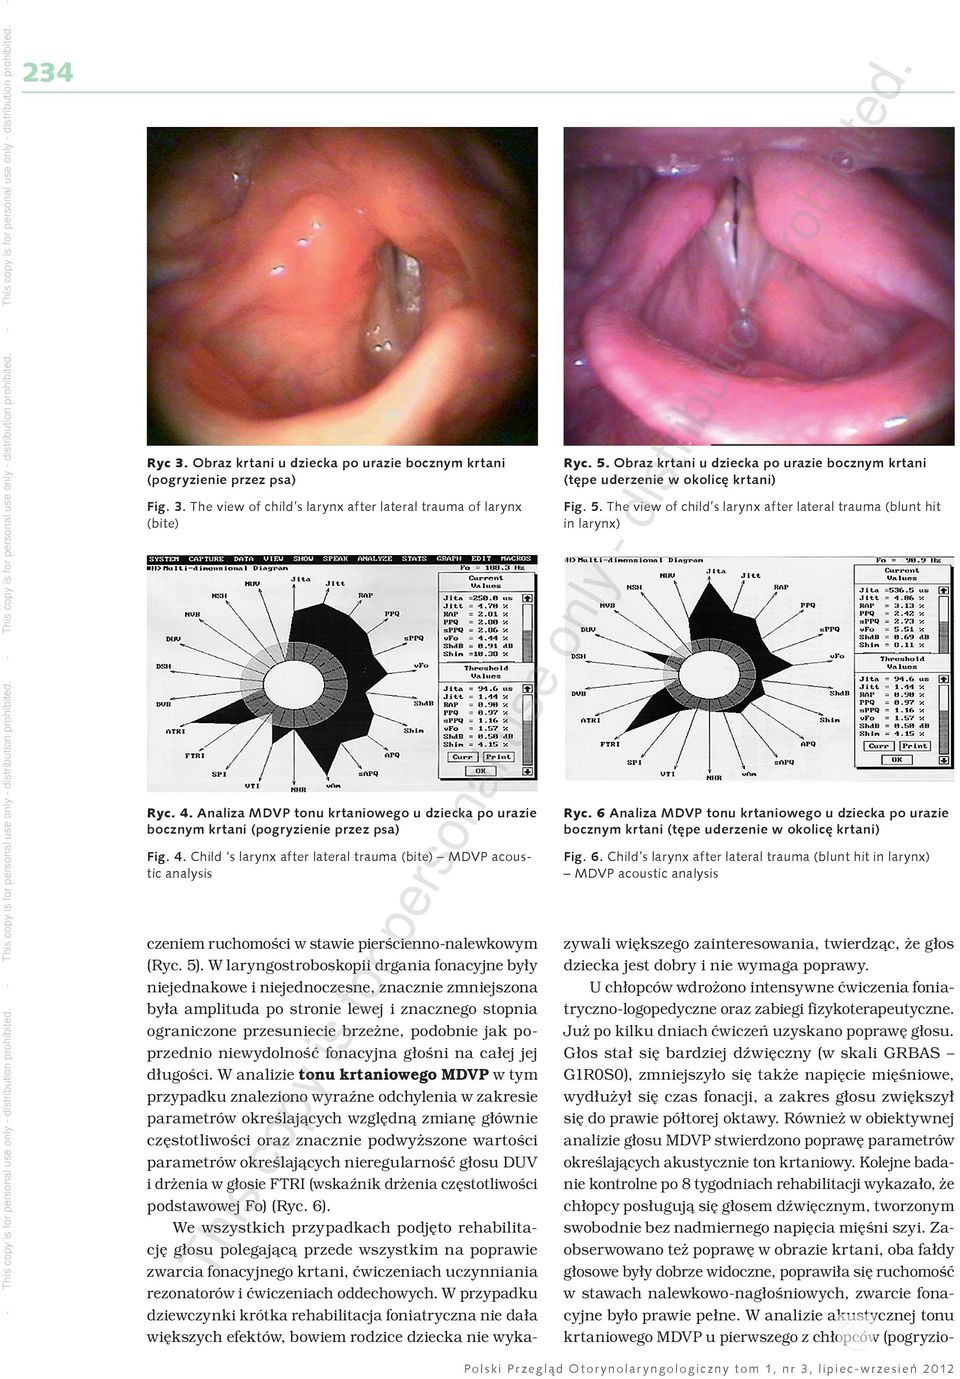 Obraz krtani u dziecka po urazie bocznym krtani (tępe uderzenie w okolicę krtani) Fig. 5. The view of child s larynx after lateral trauma (blunt hit in larynx) Ryc.